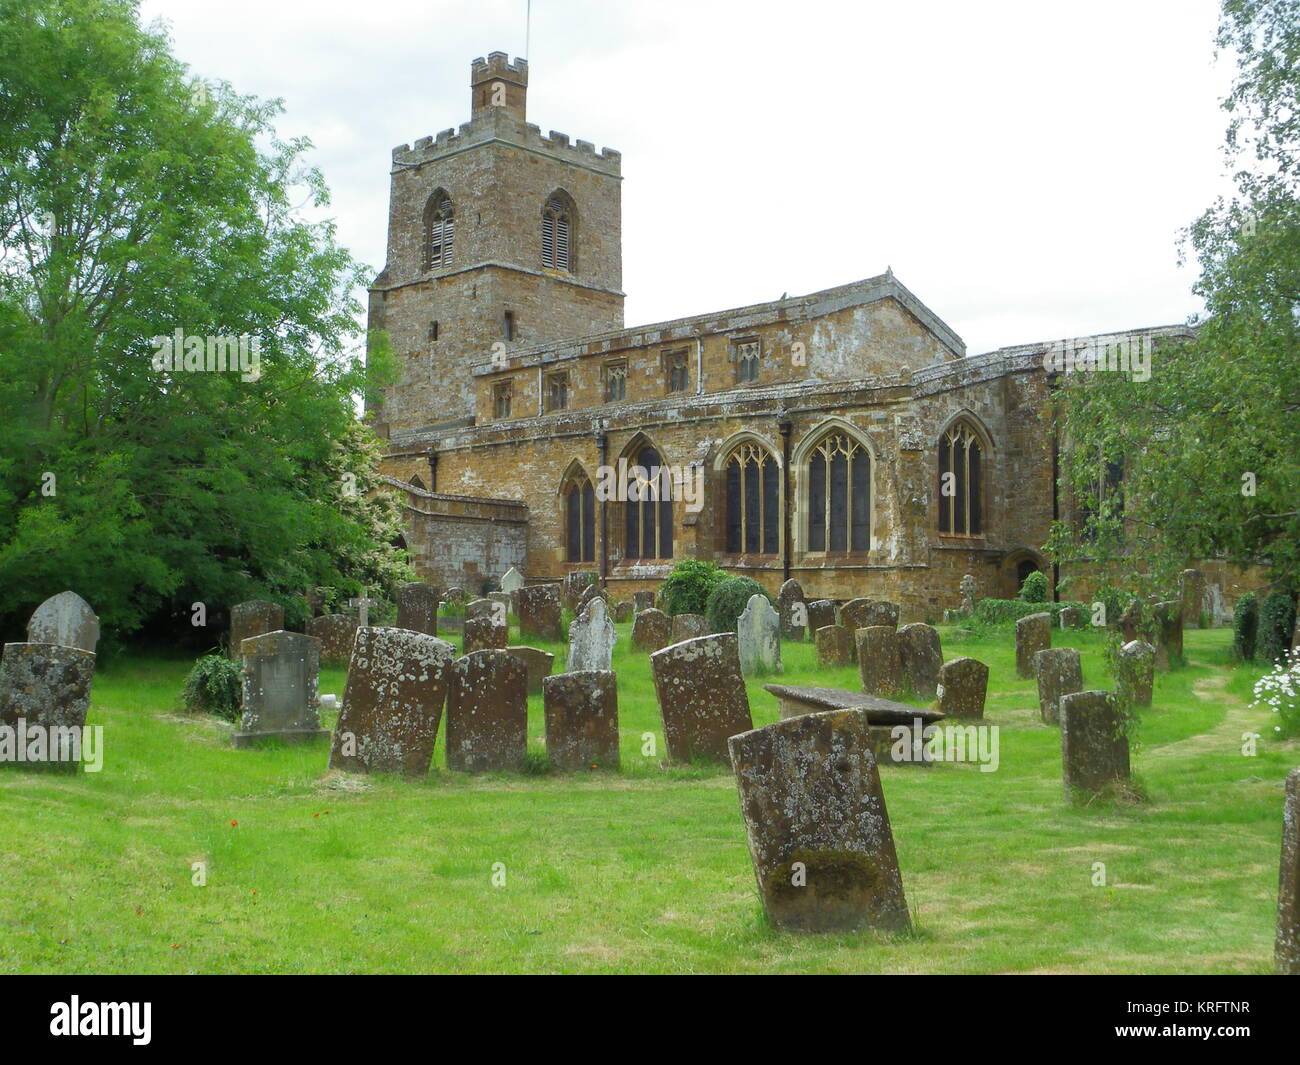 Chiesa parrocchiale di St Mary the Virgin nel villaggio di Cropredy, vicino a Banbury, Oxfordshire. La chiesa risale al XIV secolo. Foto Stock